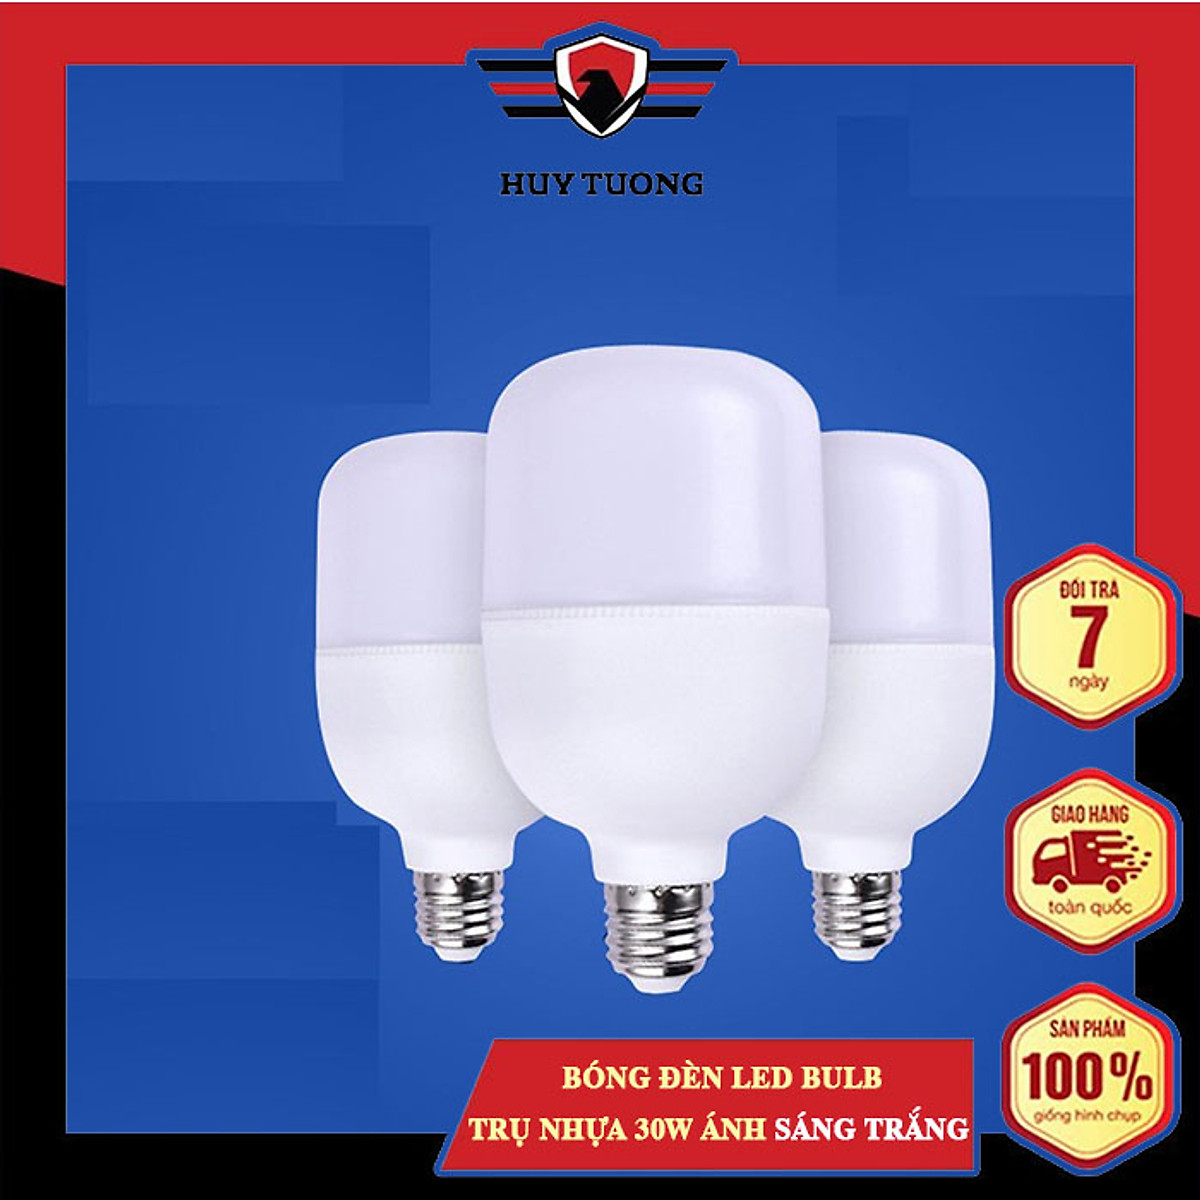 Bóng đèn led bulb trụ nhựa 30W ánh sáng trắng cao cấp - Bóng đèn